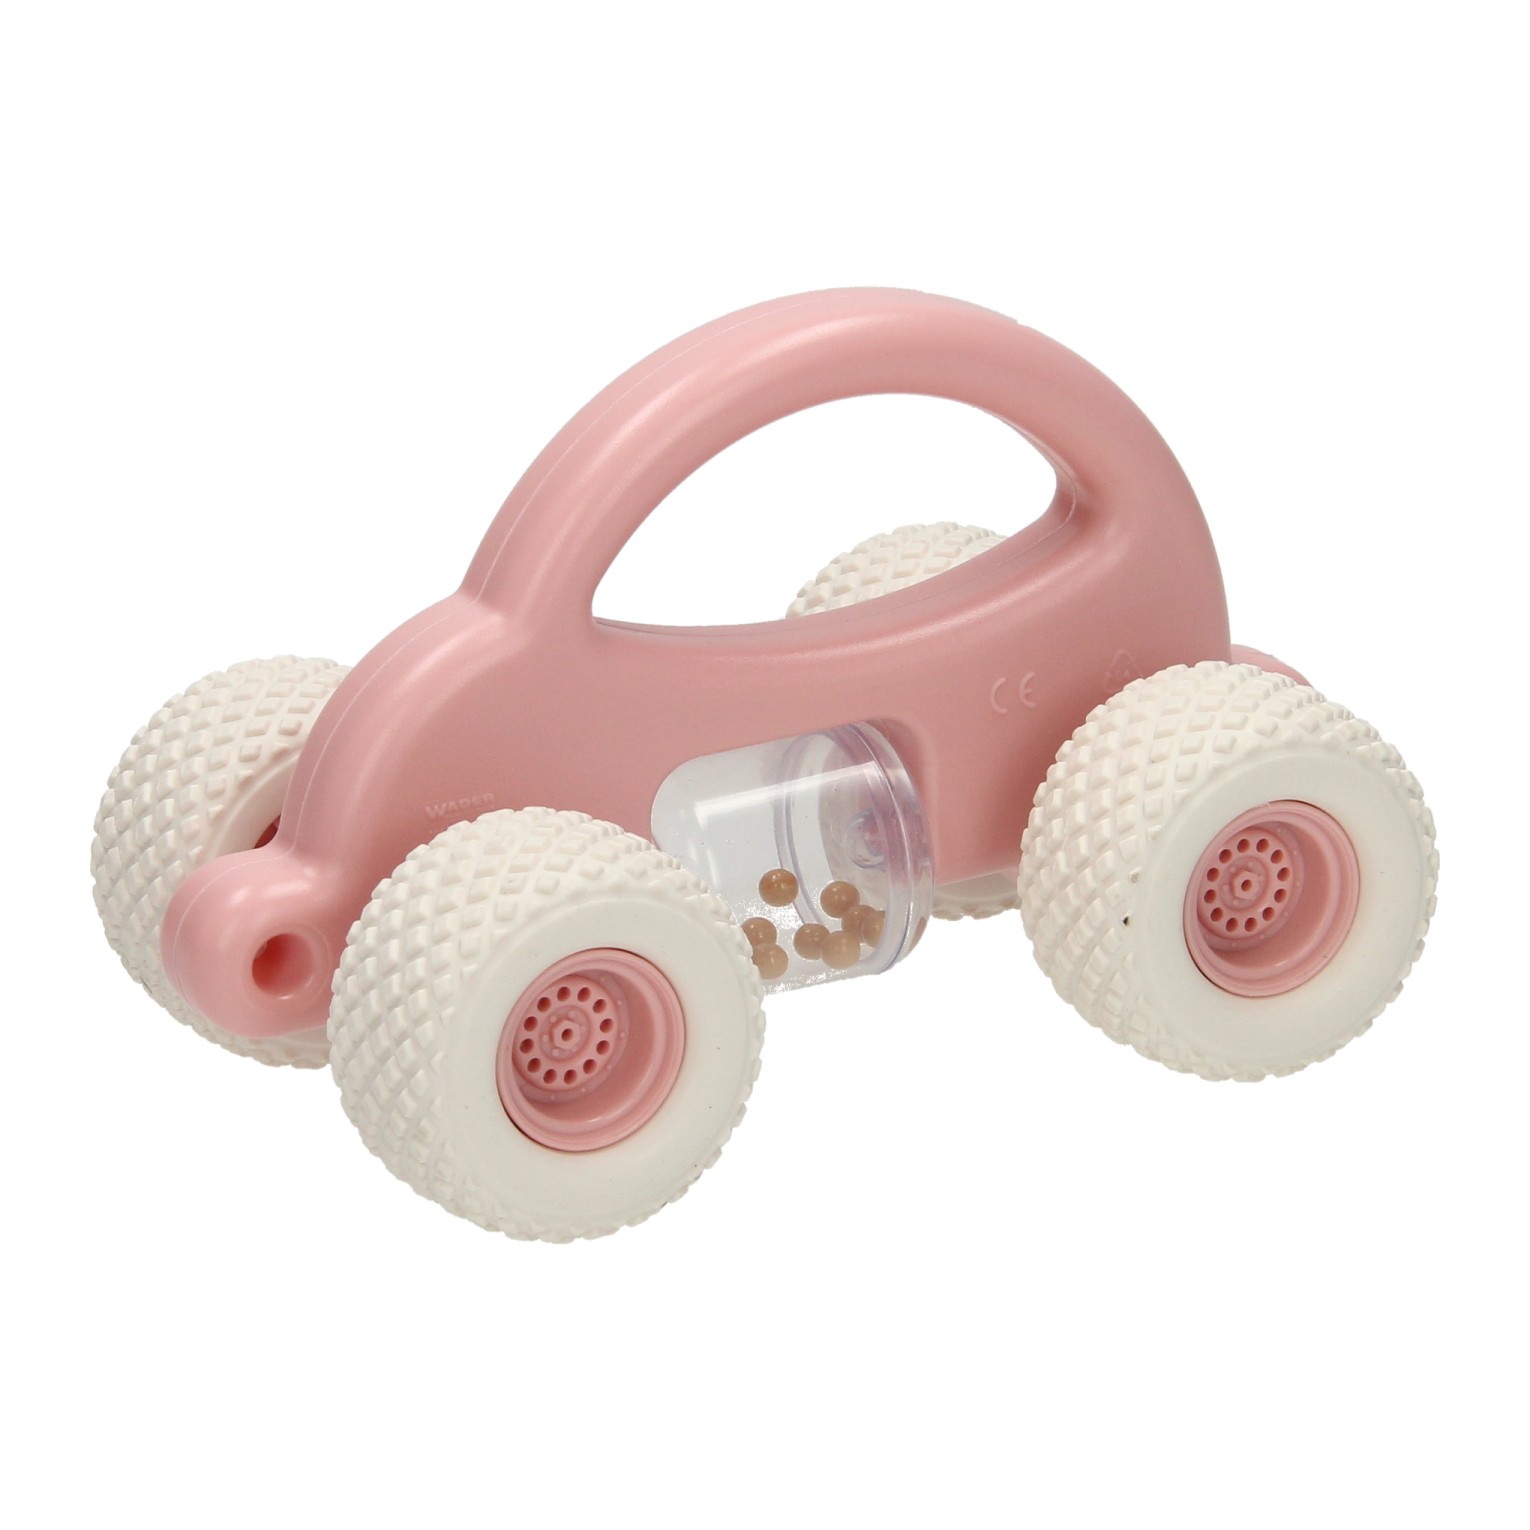 Cavallino Duw Speelgoedauto met Rammelaar - Roze